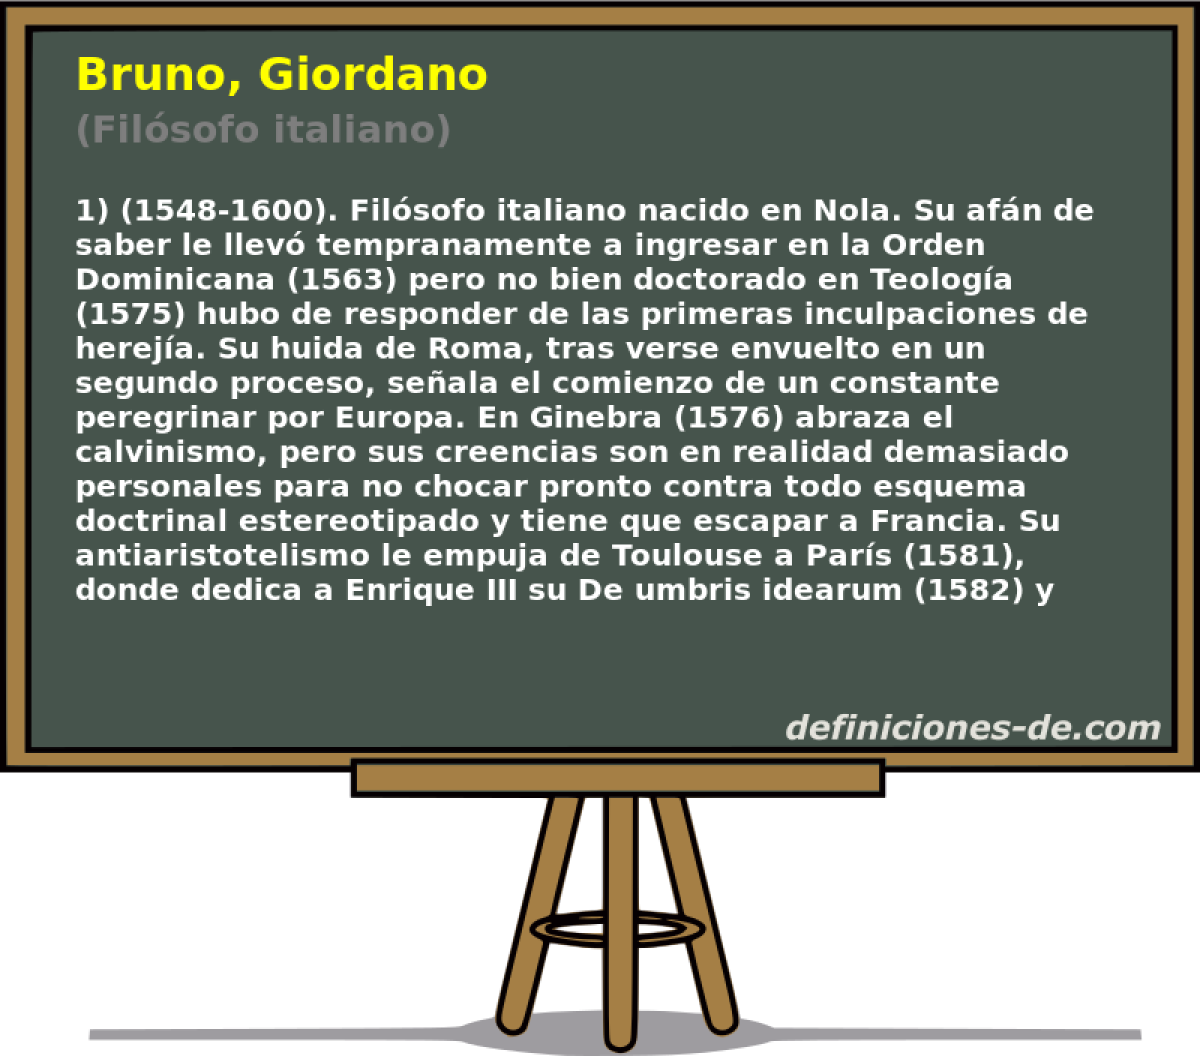 Bruno, Giordano (Filsofo italiano)